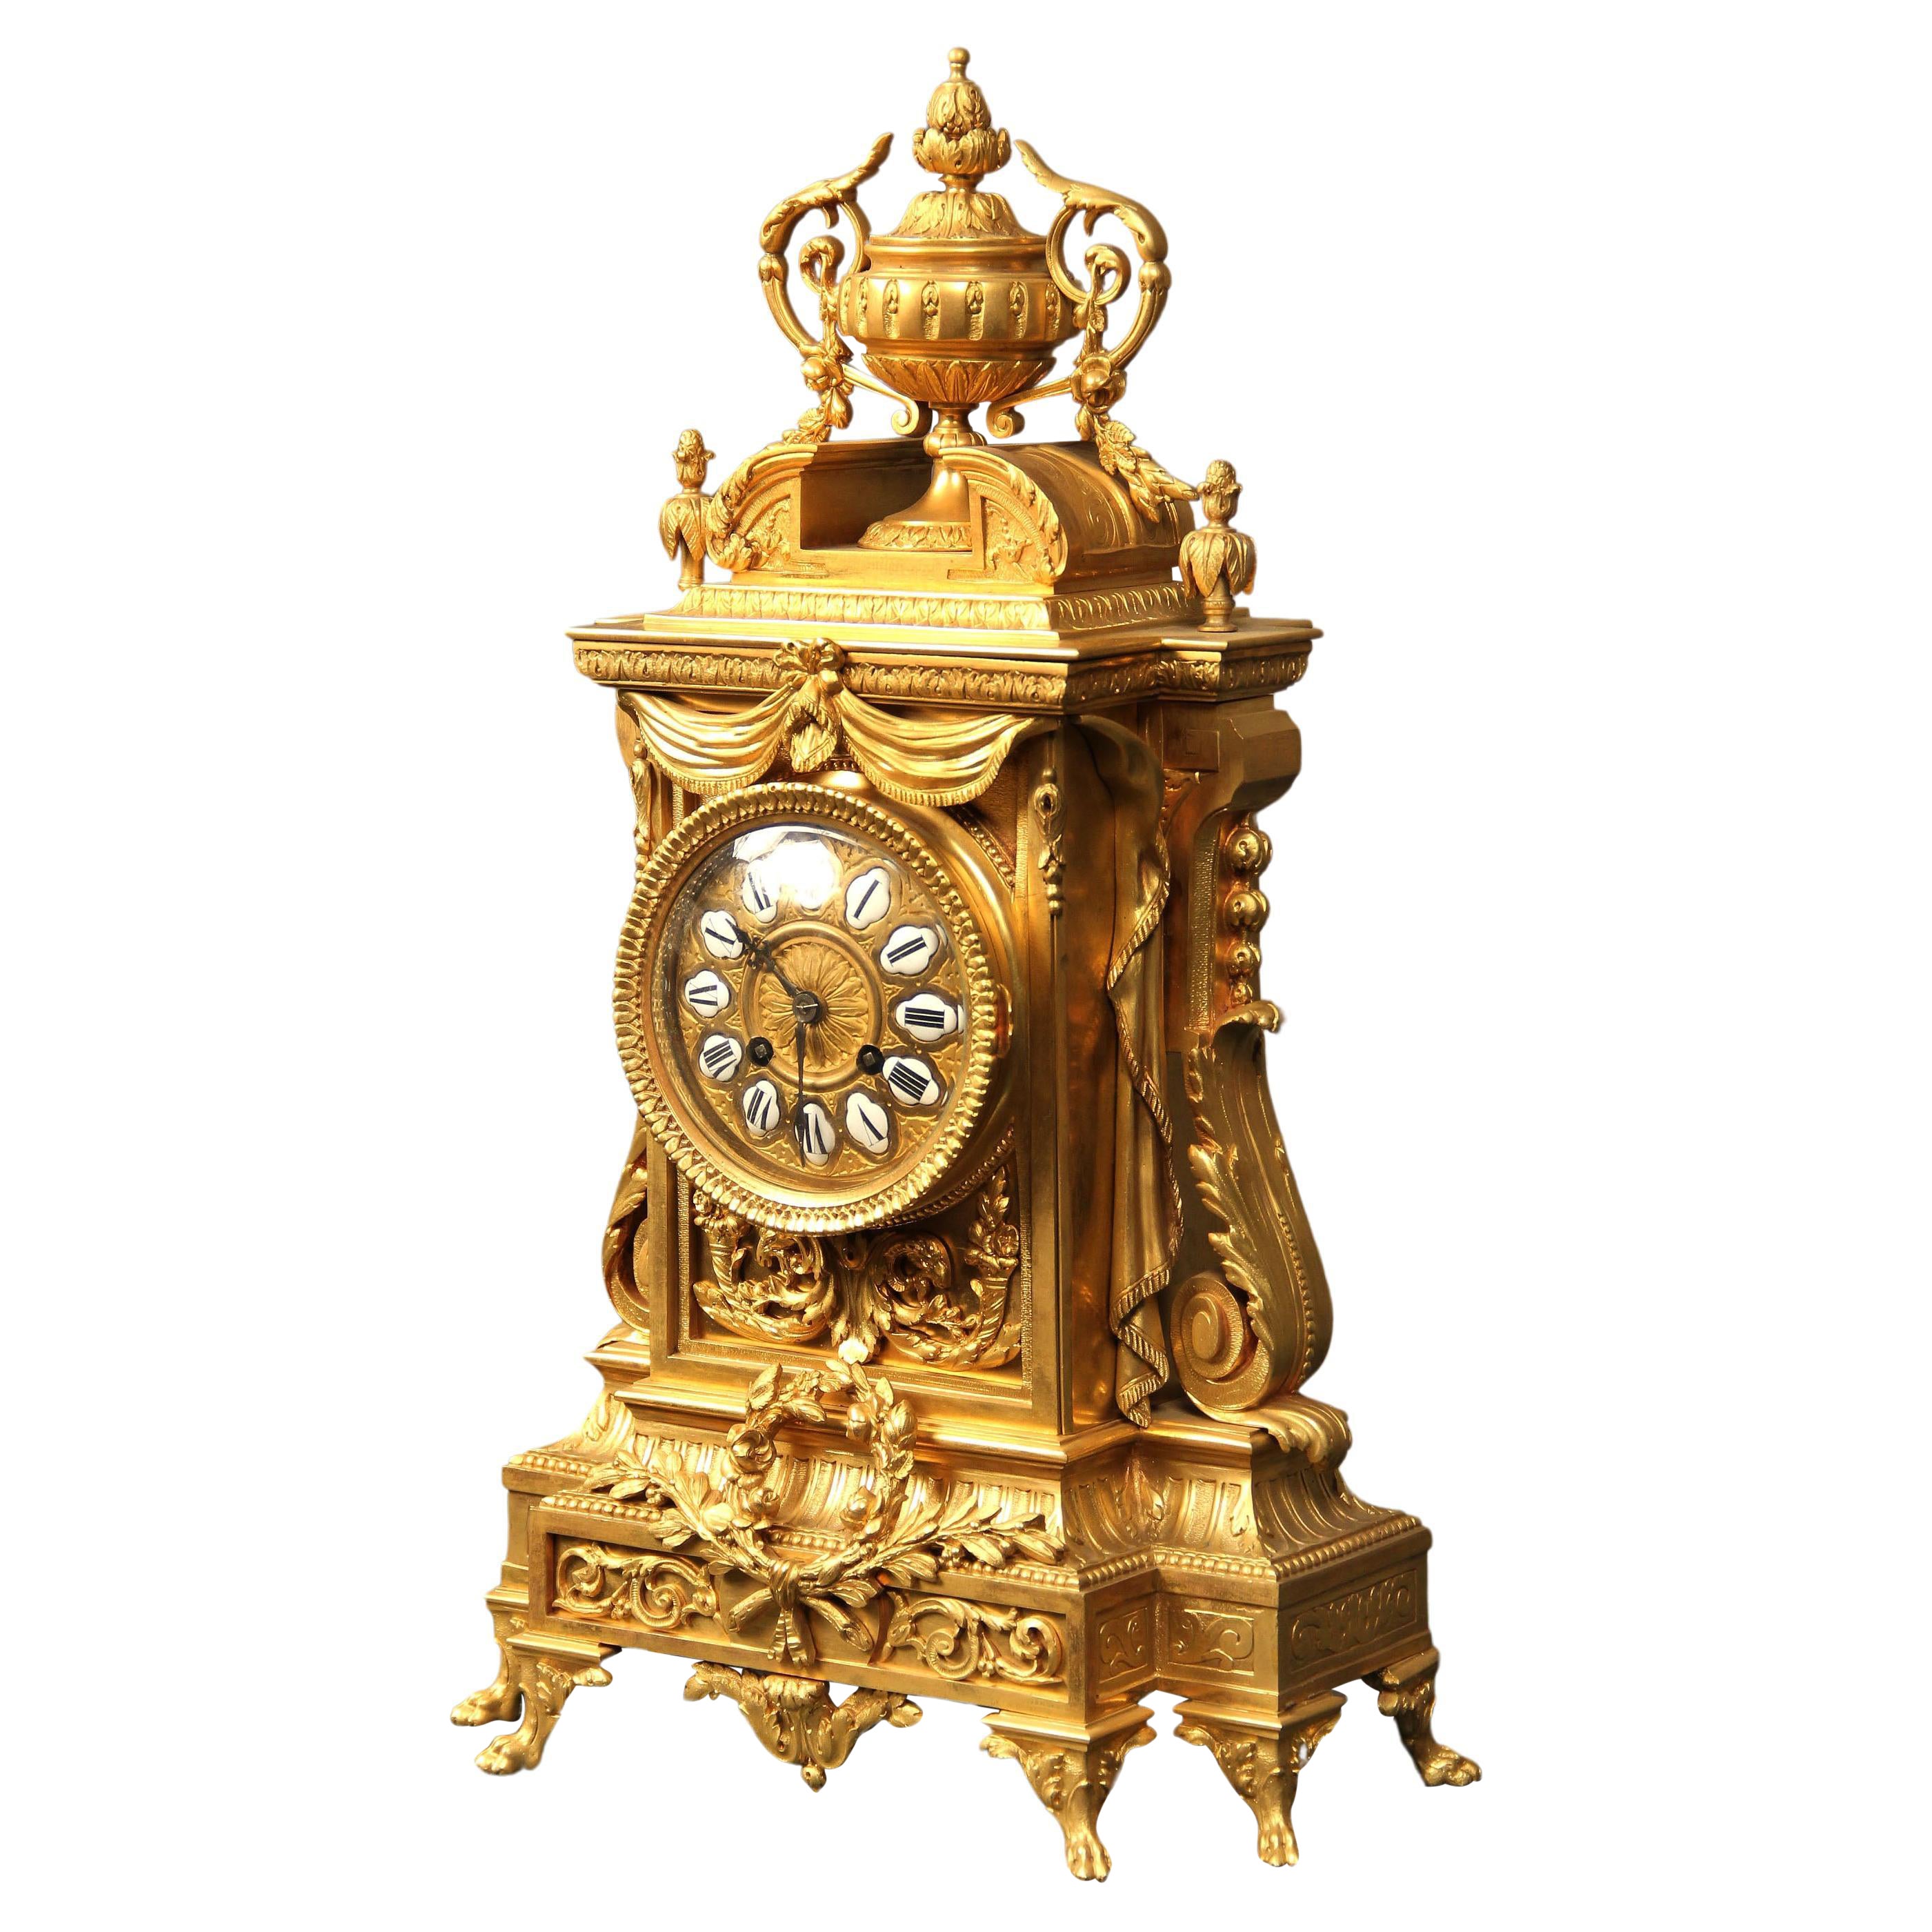 Bonito reloj de manto de bronce dorado de finales del siglo XIX